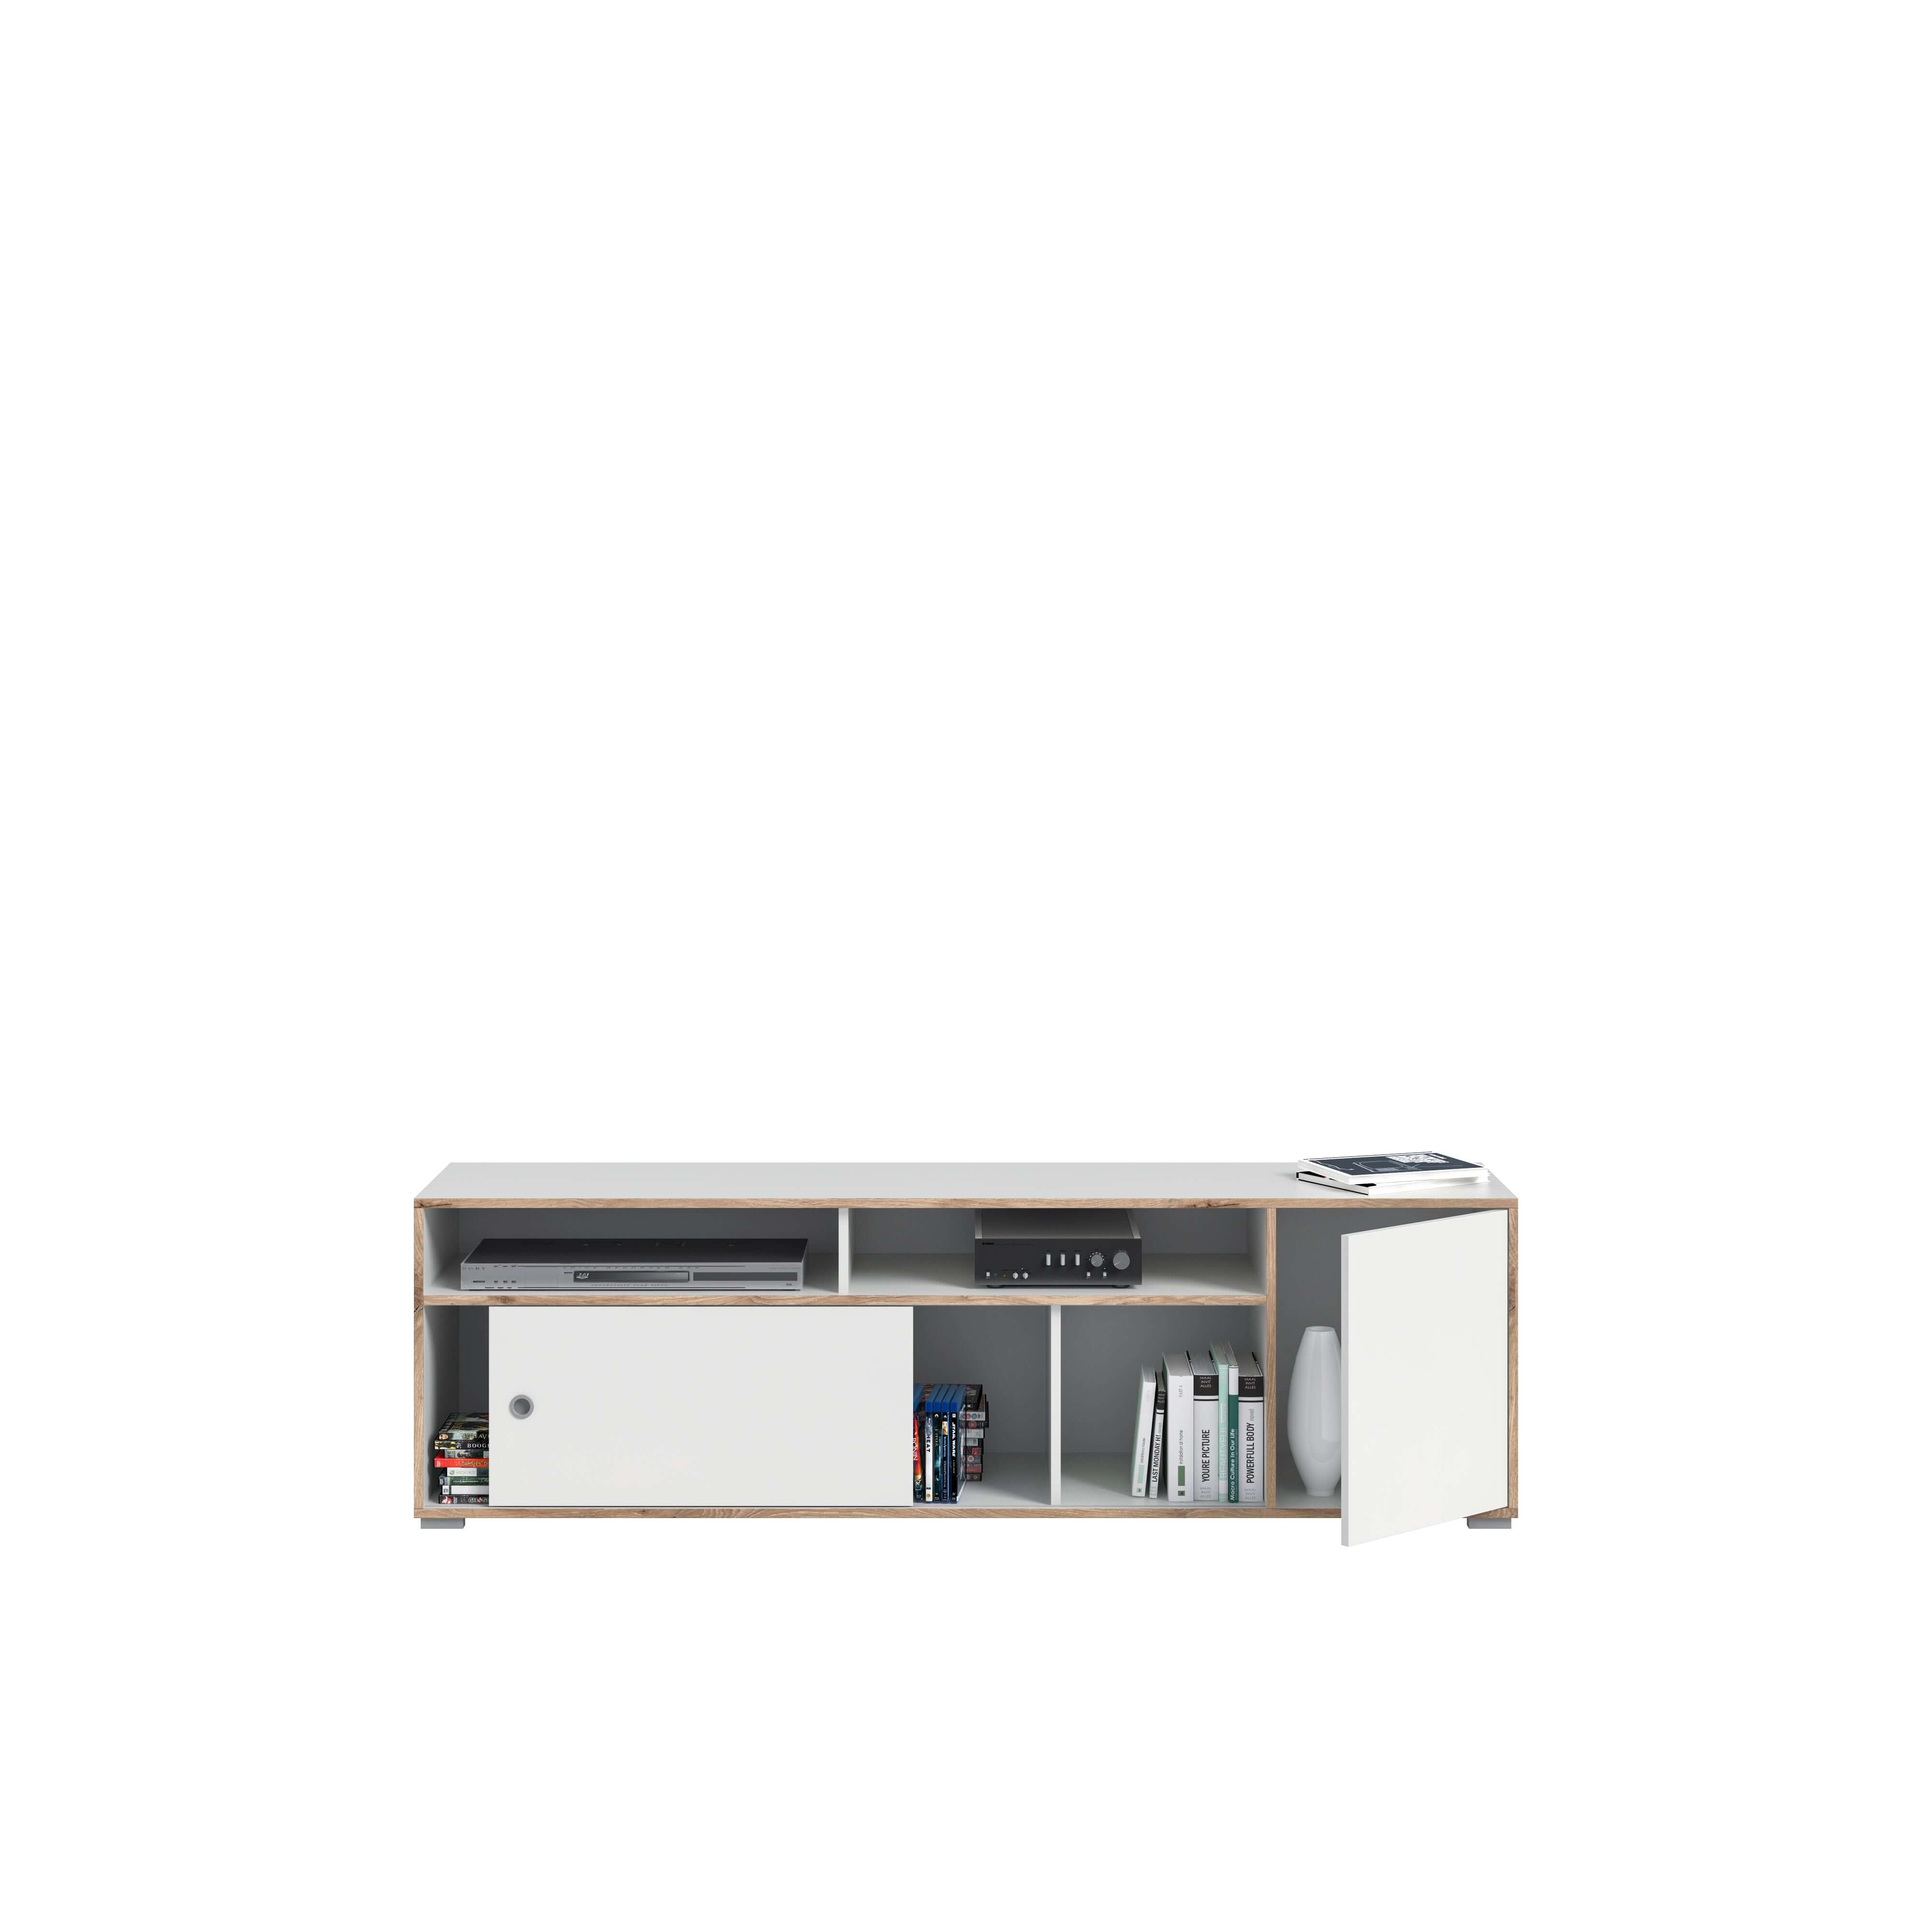 Lowboard I Modell TK6 I Design: Schlichtes Möbel mit viel Stauraummöglichkeiten